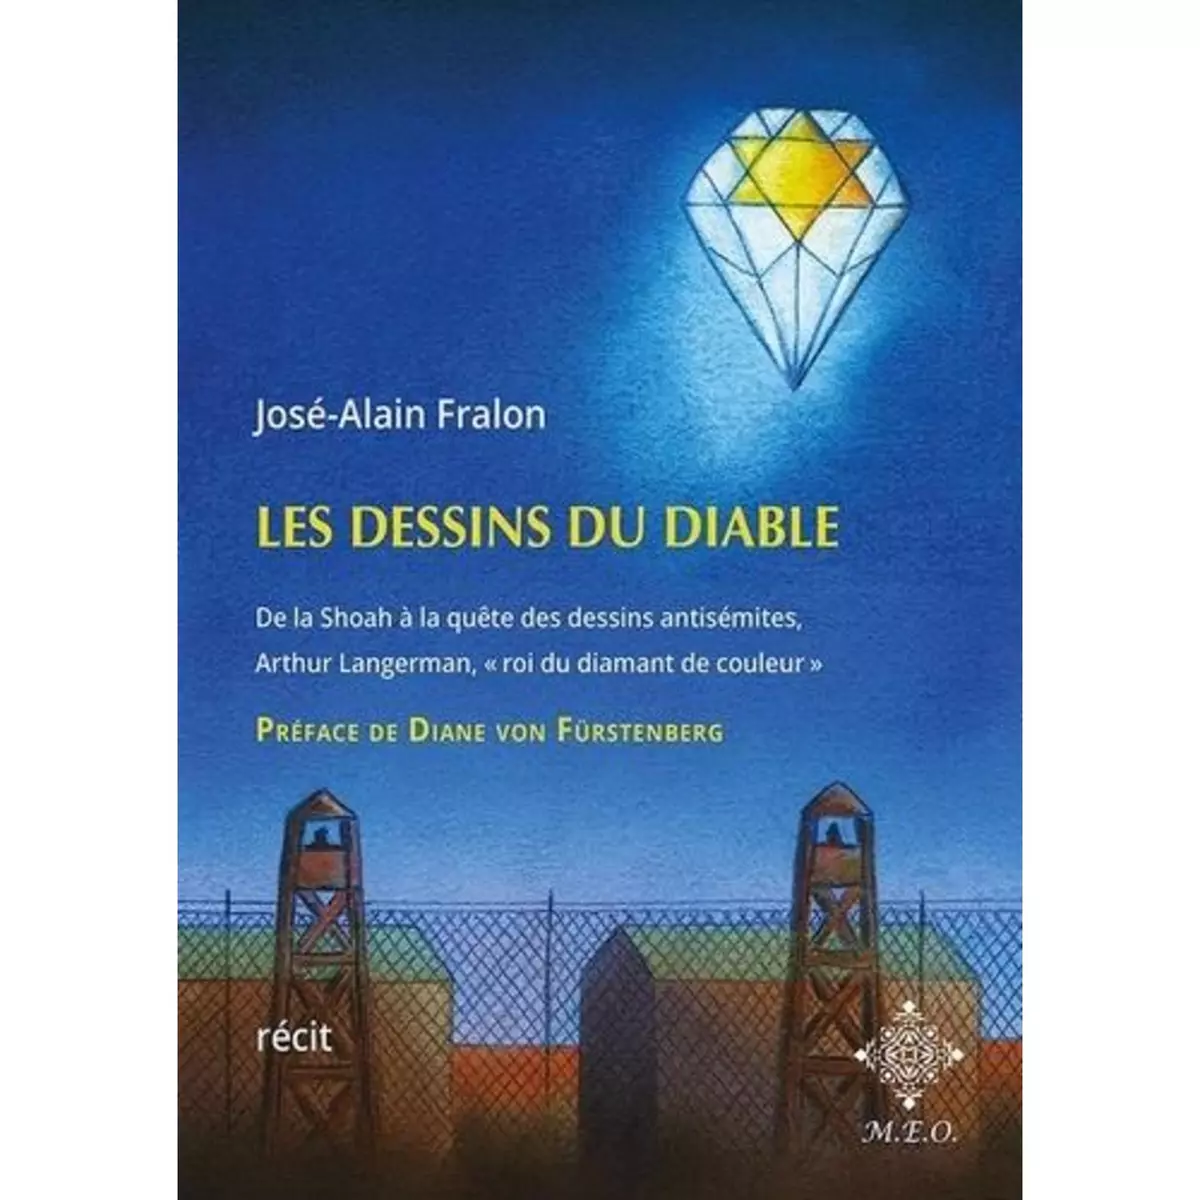  LES DESSINS DU DIABLE, Fralon José-Alain